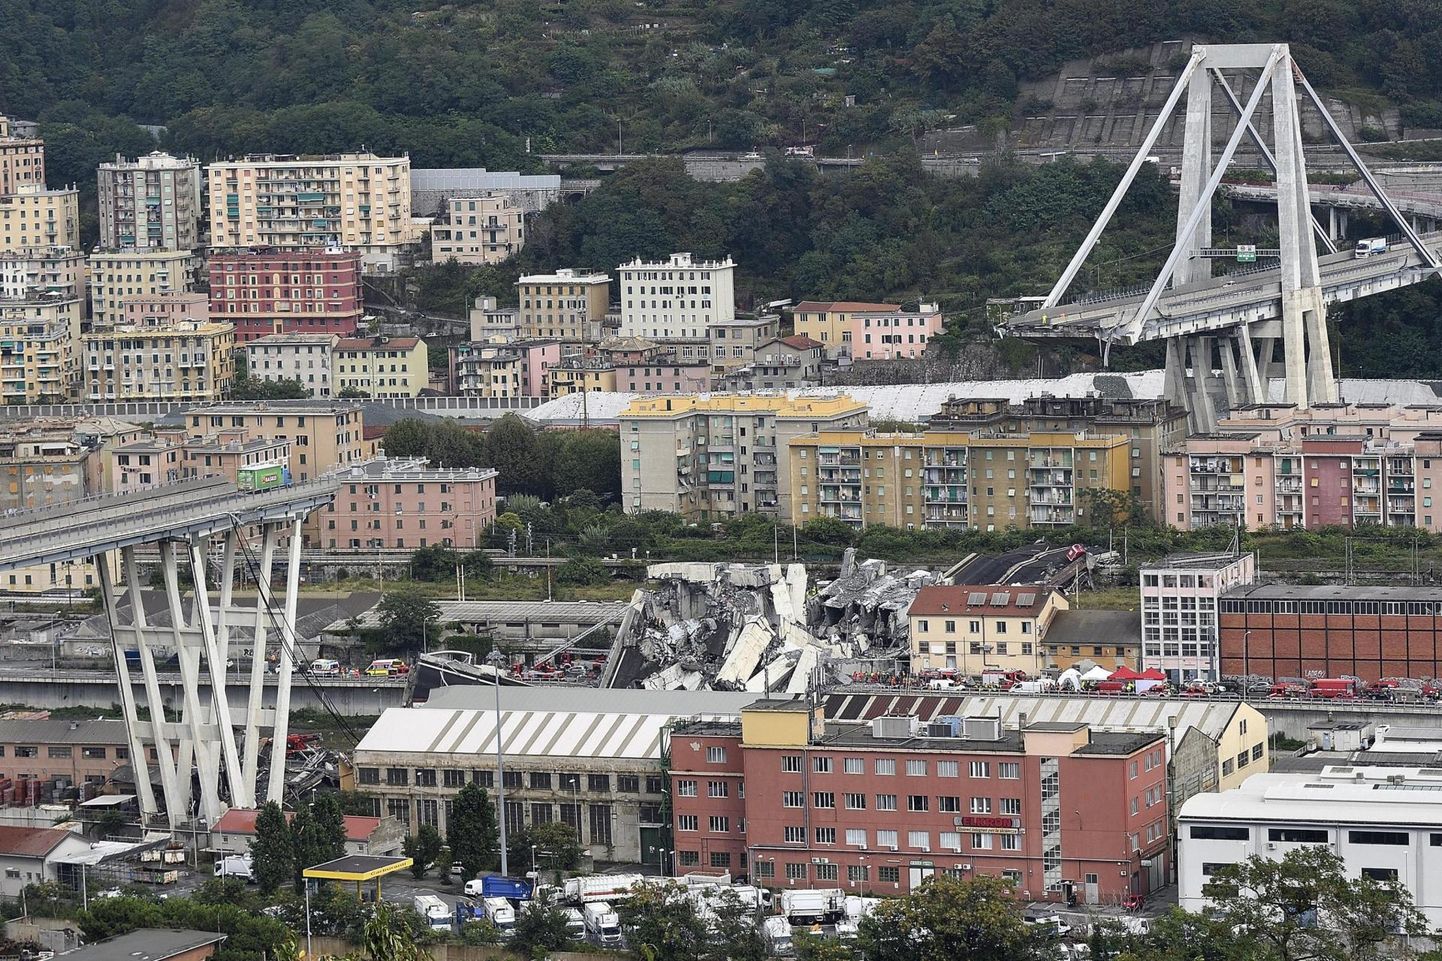 Genova kesklinnast läänes asunud Morandi sillal kulgenud A10 maanteel oli pidevalt tihe liiklus. Eile lõuna ajal toimunud varingu ajal oli sillal umbes 30 sõidukit.